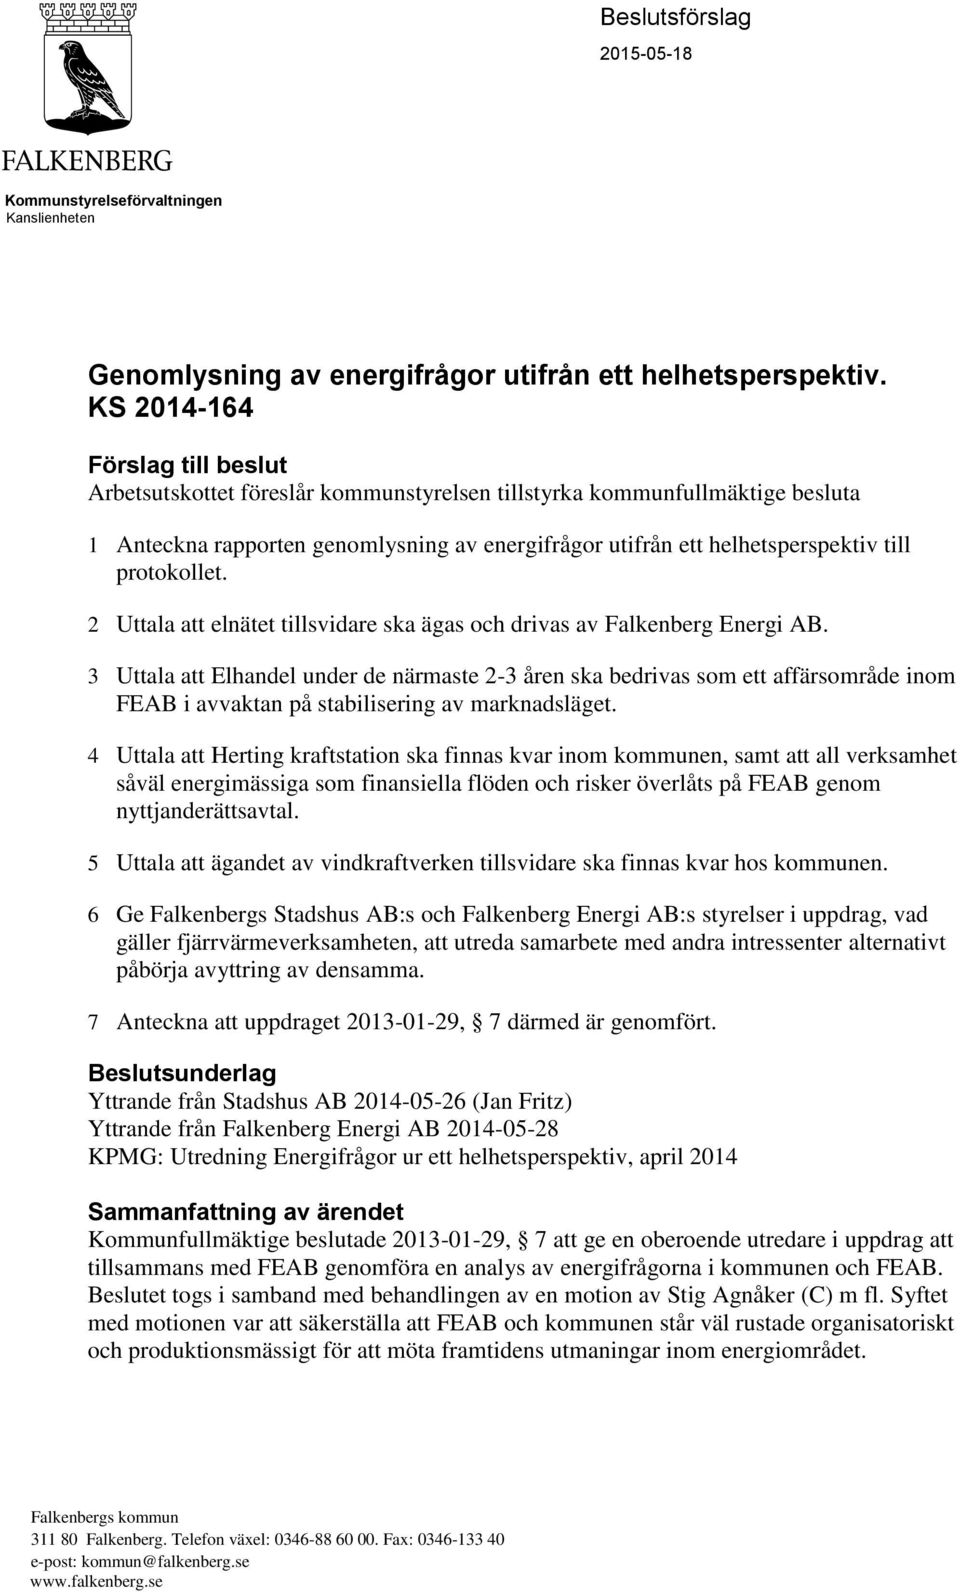 protokollet. 2 Uttala att elnätet tillsvidare ska ägas och drivas av Falkenberg Energi AB.